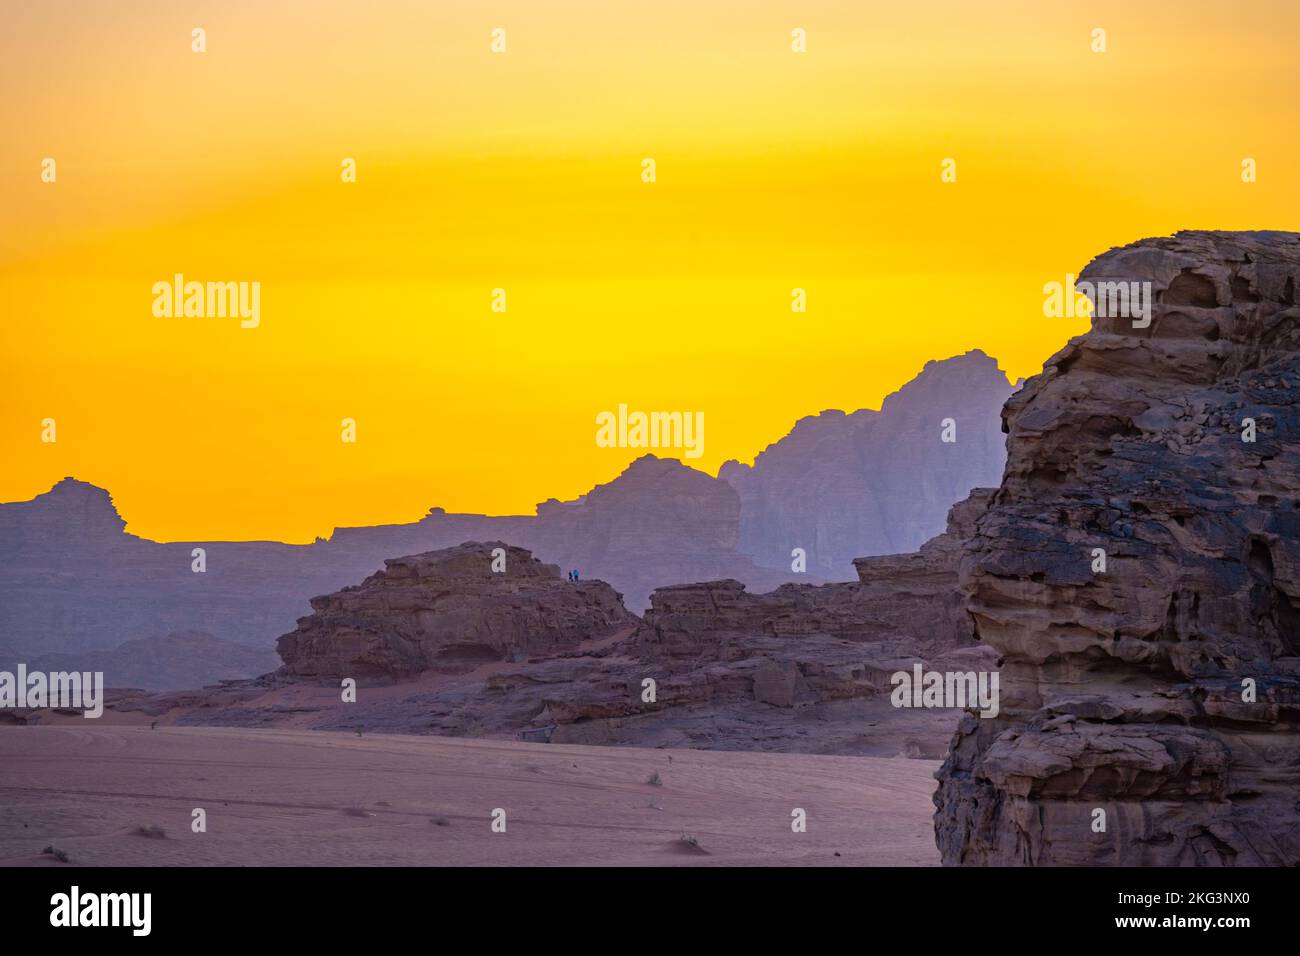 The mountains of Wadi Rum Jordan at sunset Stock Photo